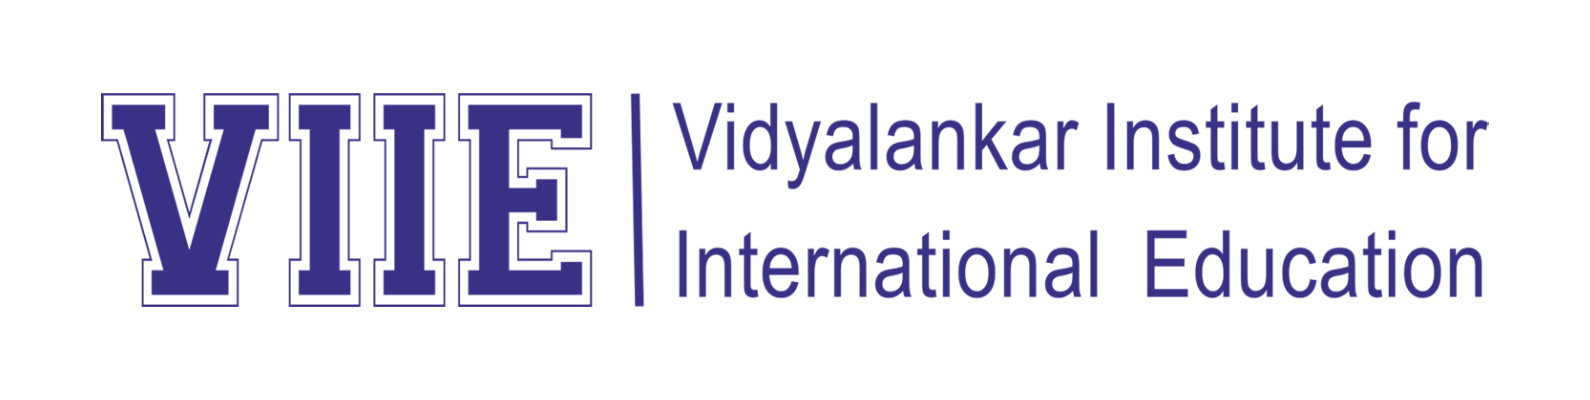 Vidyalankar Institute of International Education